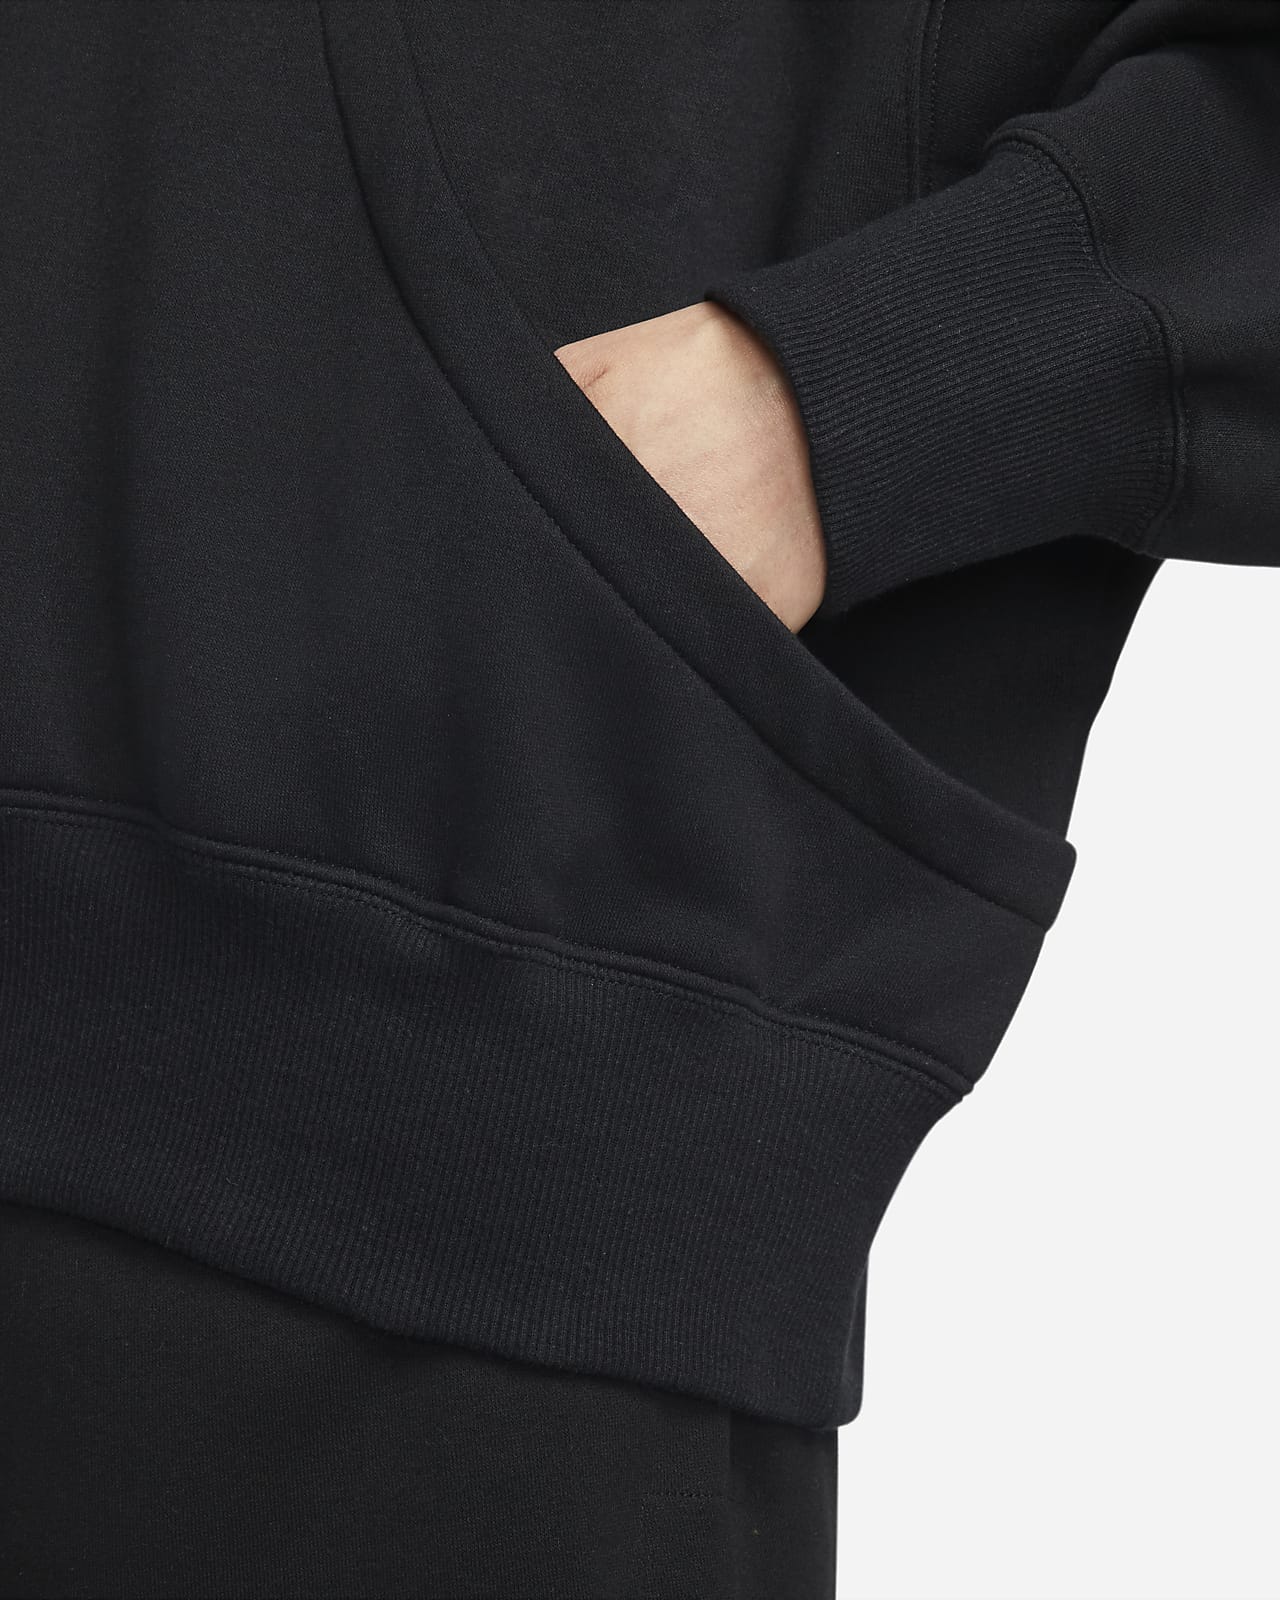 Sweat à capuche ultra-oversize Nike Sportswear Phoenix Fleece pour femme.  Nike LU